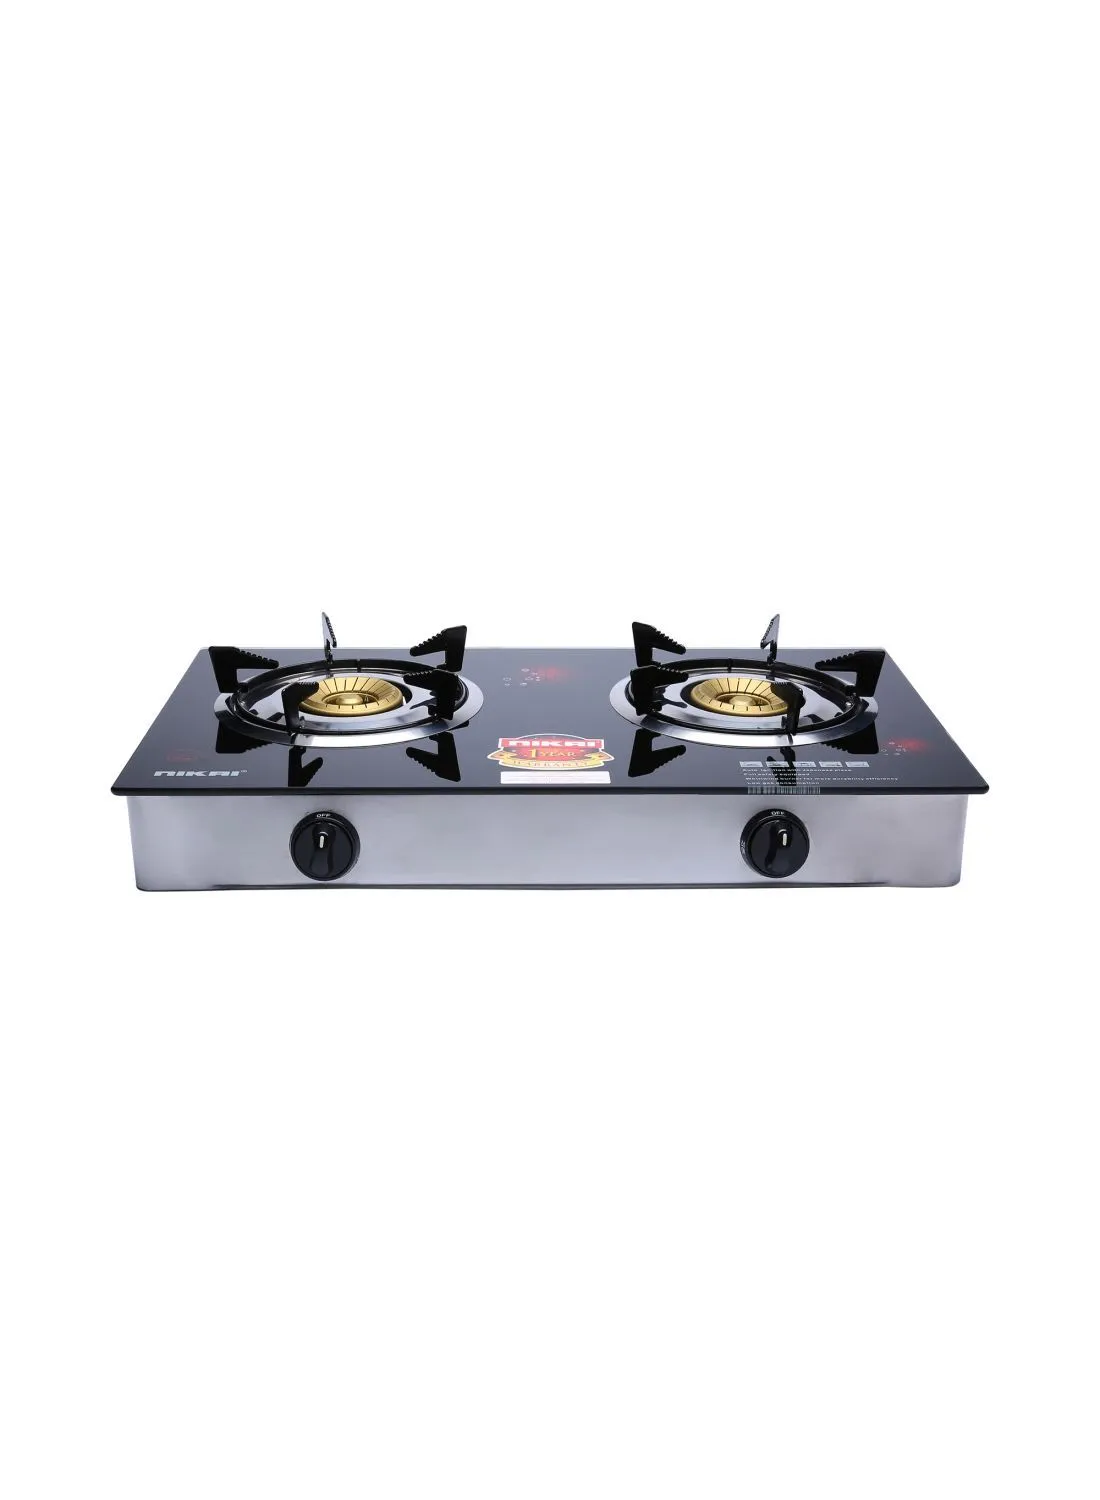 NIKAI Stainless Steel Gas Cooker NG7092GSFN / NG9092K1 Black 